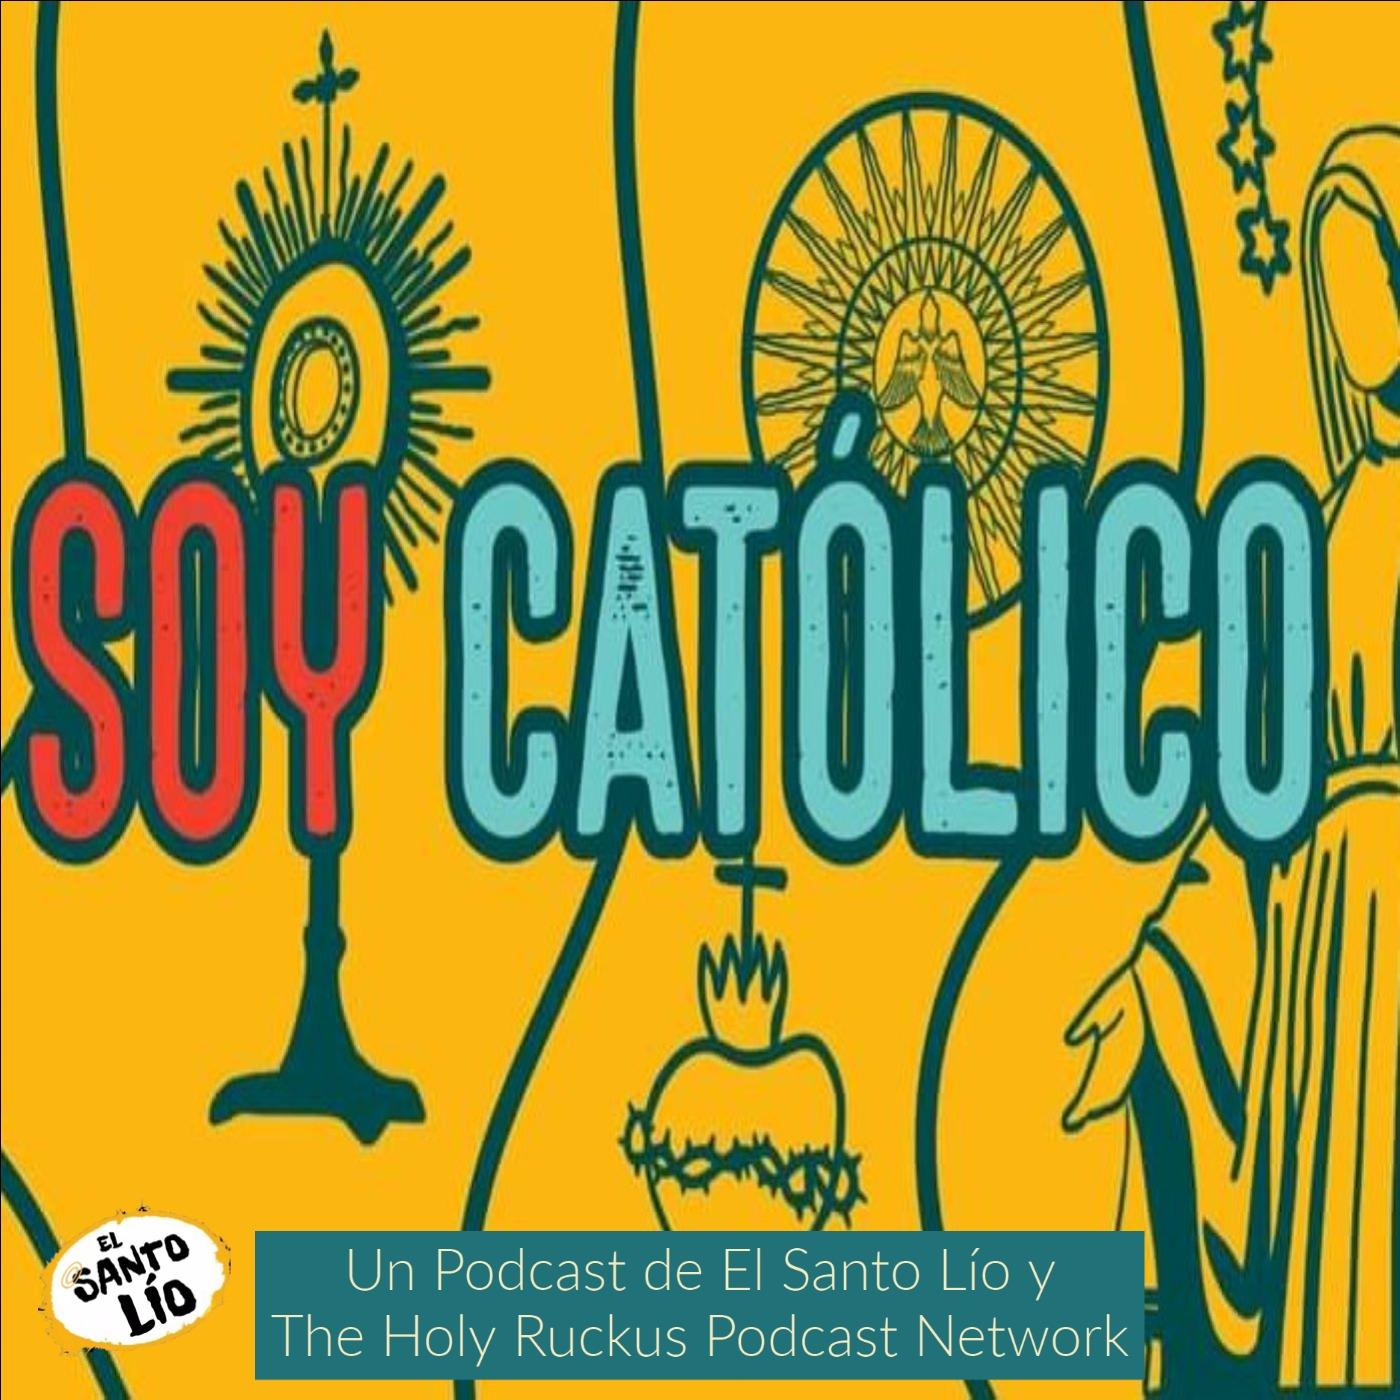 Soy Católico Podcast